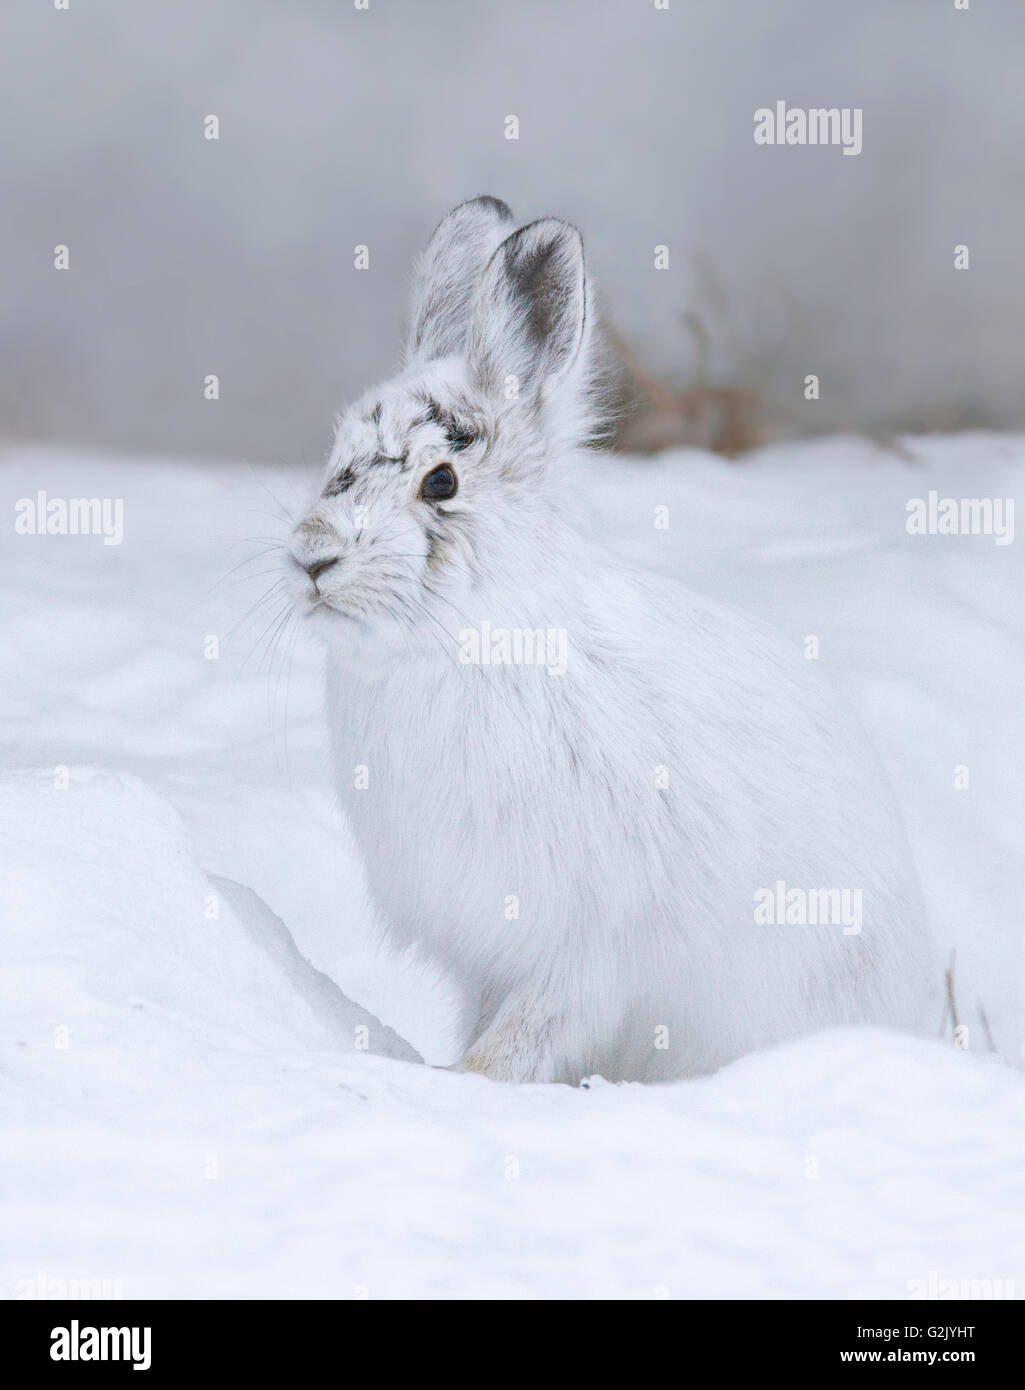 Le lièvre (Lepus americanus), aussi appelé le lièvre variable, ou le lapin, est une espèces de lièvres trouvés en Amérique du Nord Banque D'Images